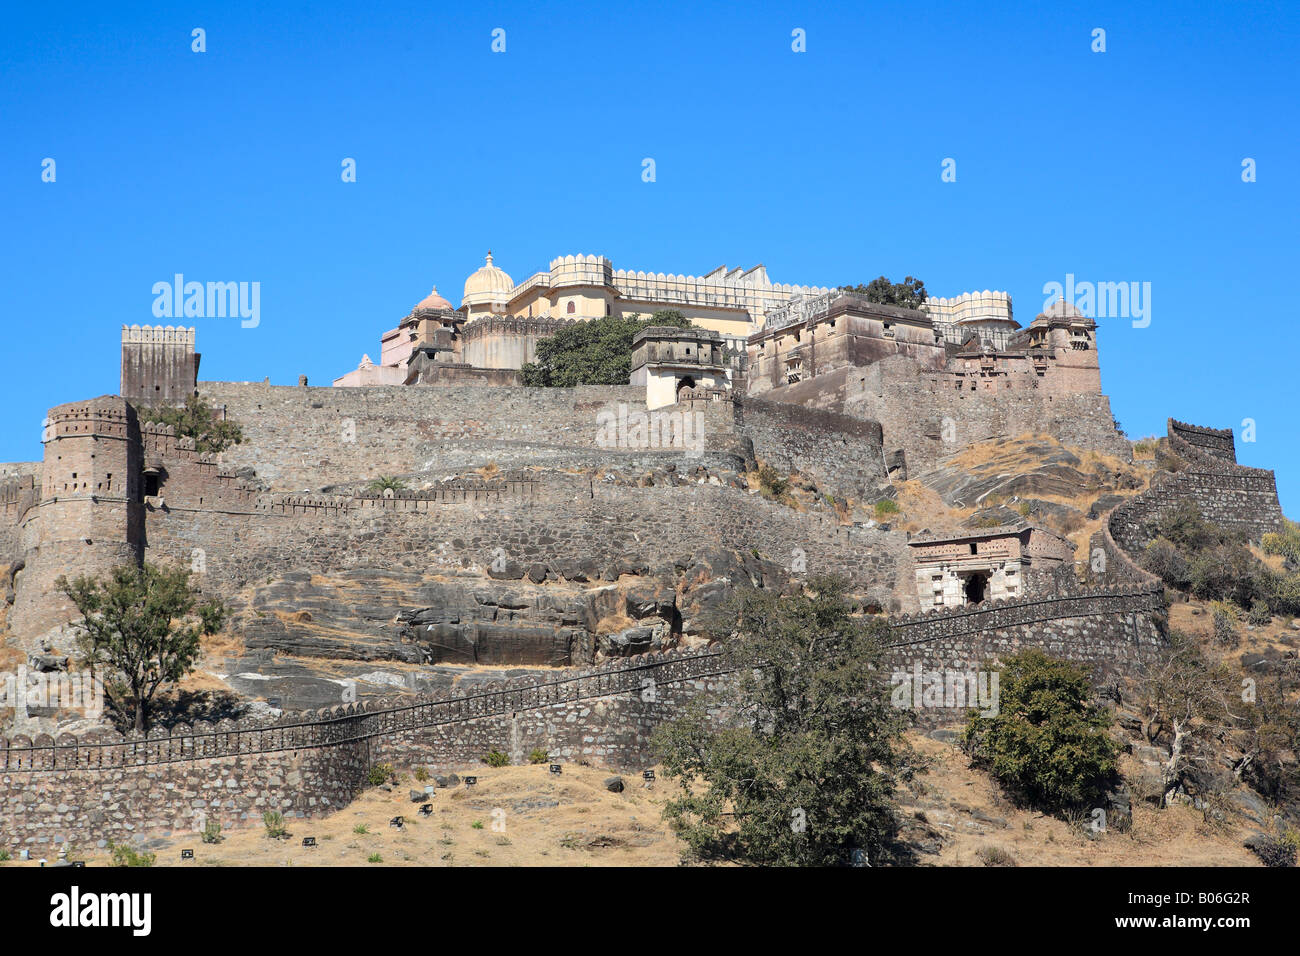 Fort, Kumbhalgarh, Rajasthan, India Stock Photo